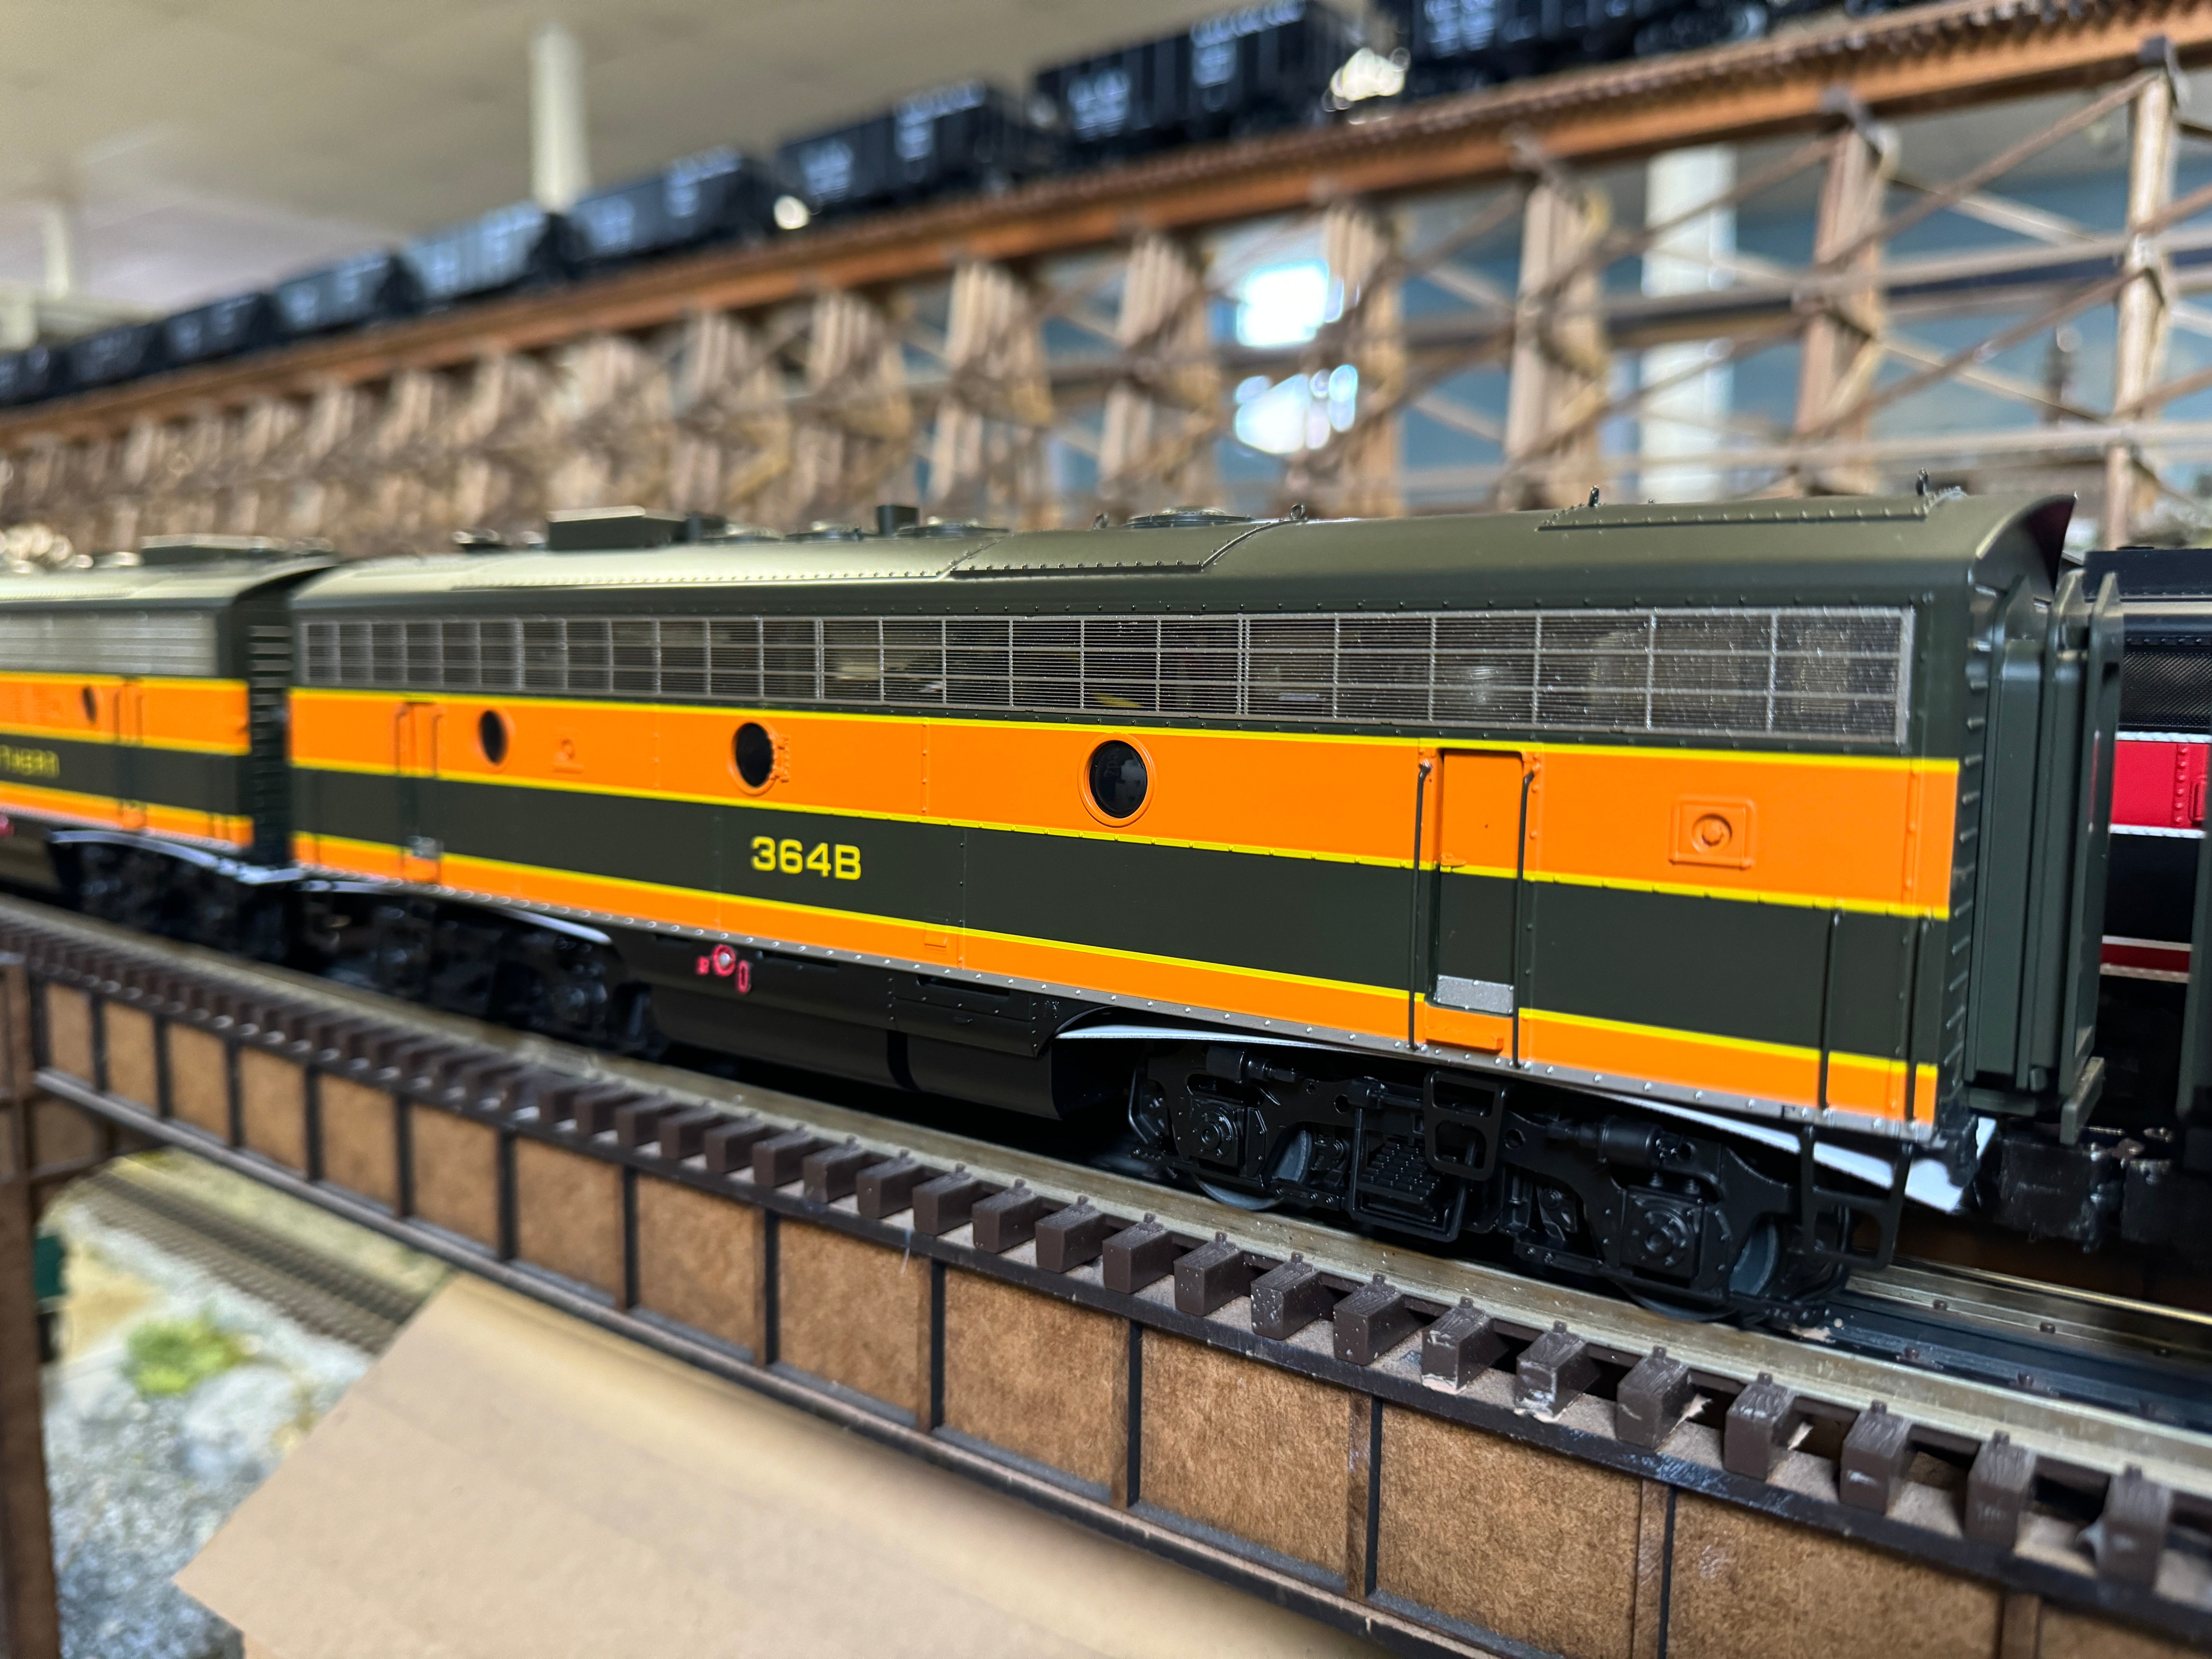 Lionel 2433208 - Legacy F7B Diesel Locomotive "Great Northern" #364B